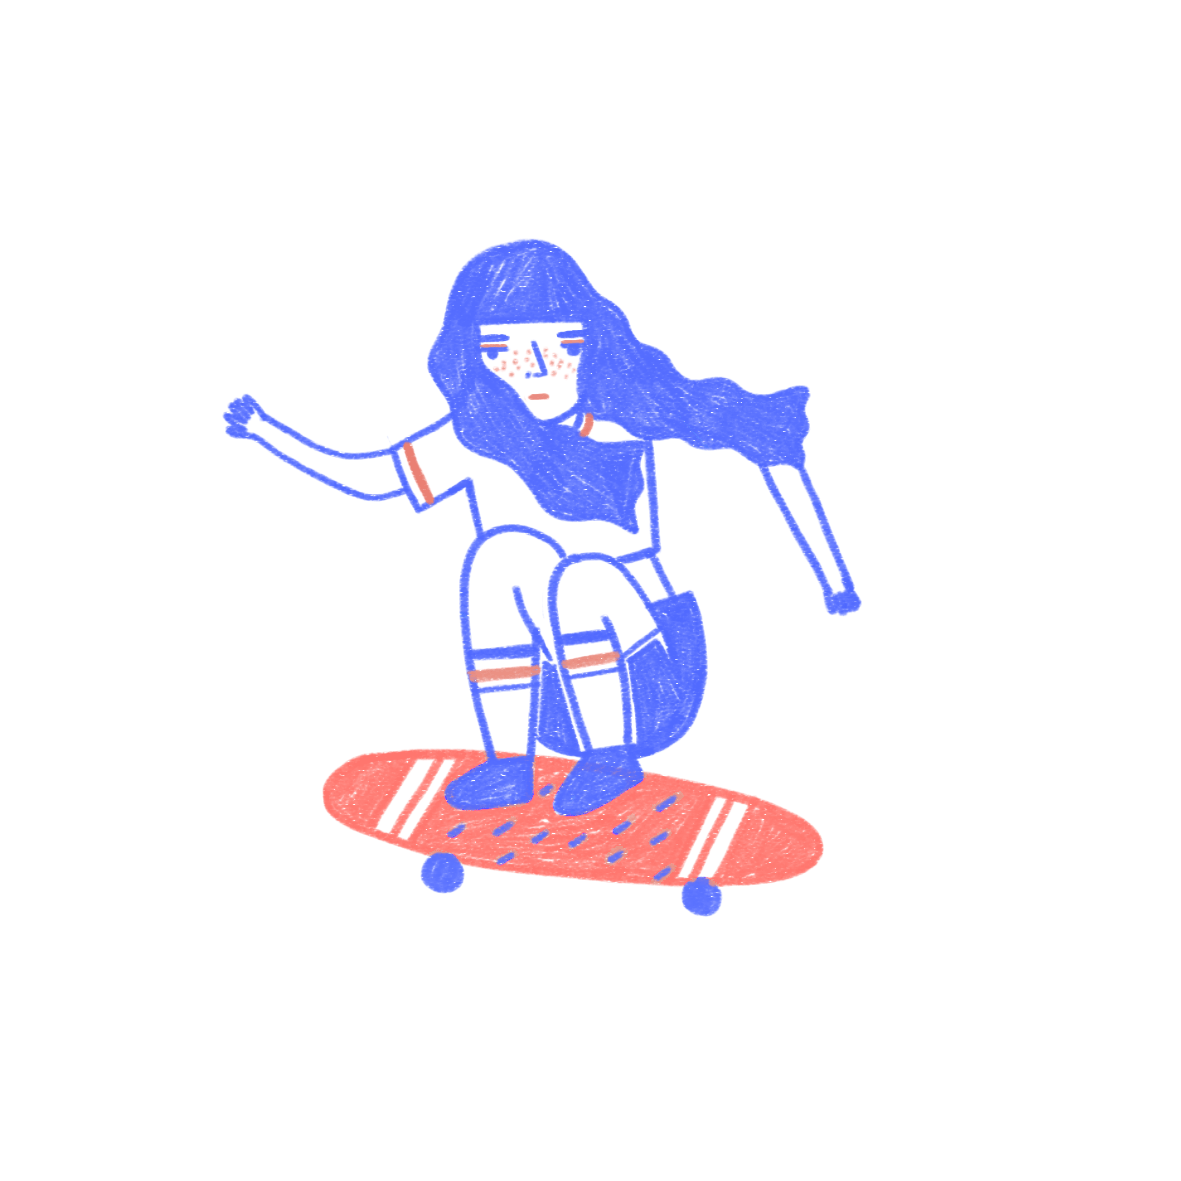 skate clipart girl skateboard